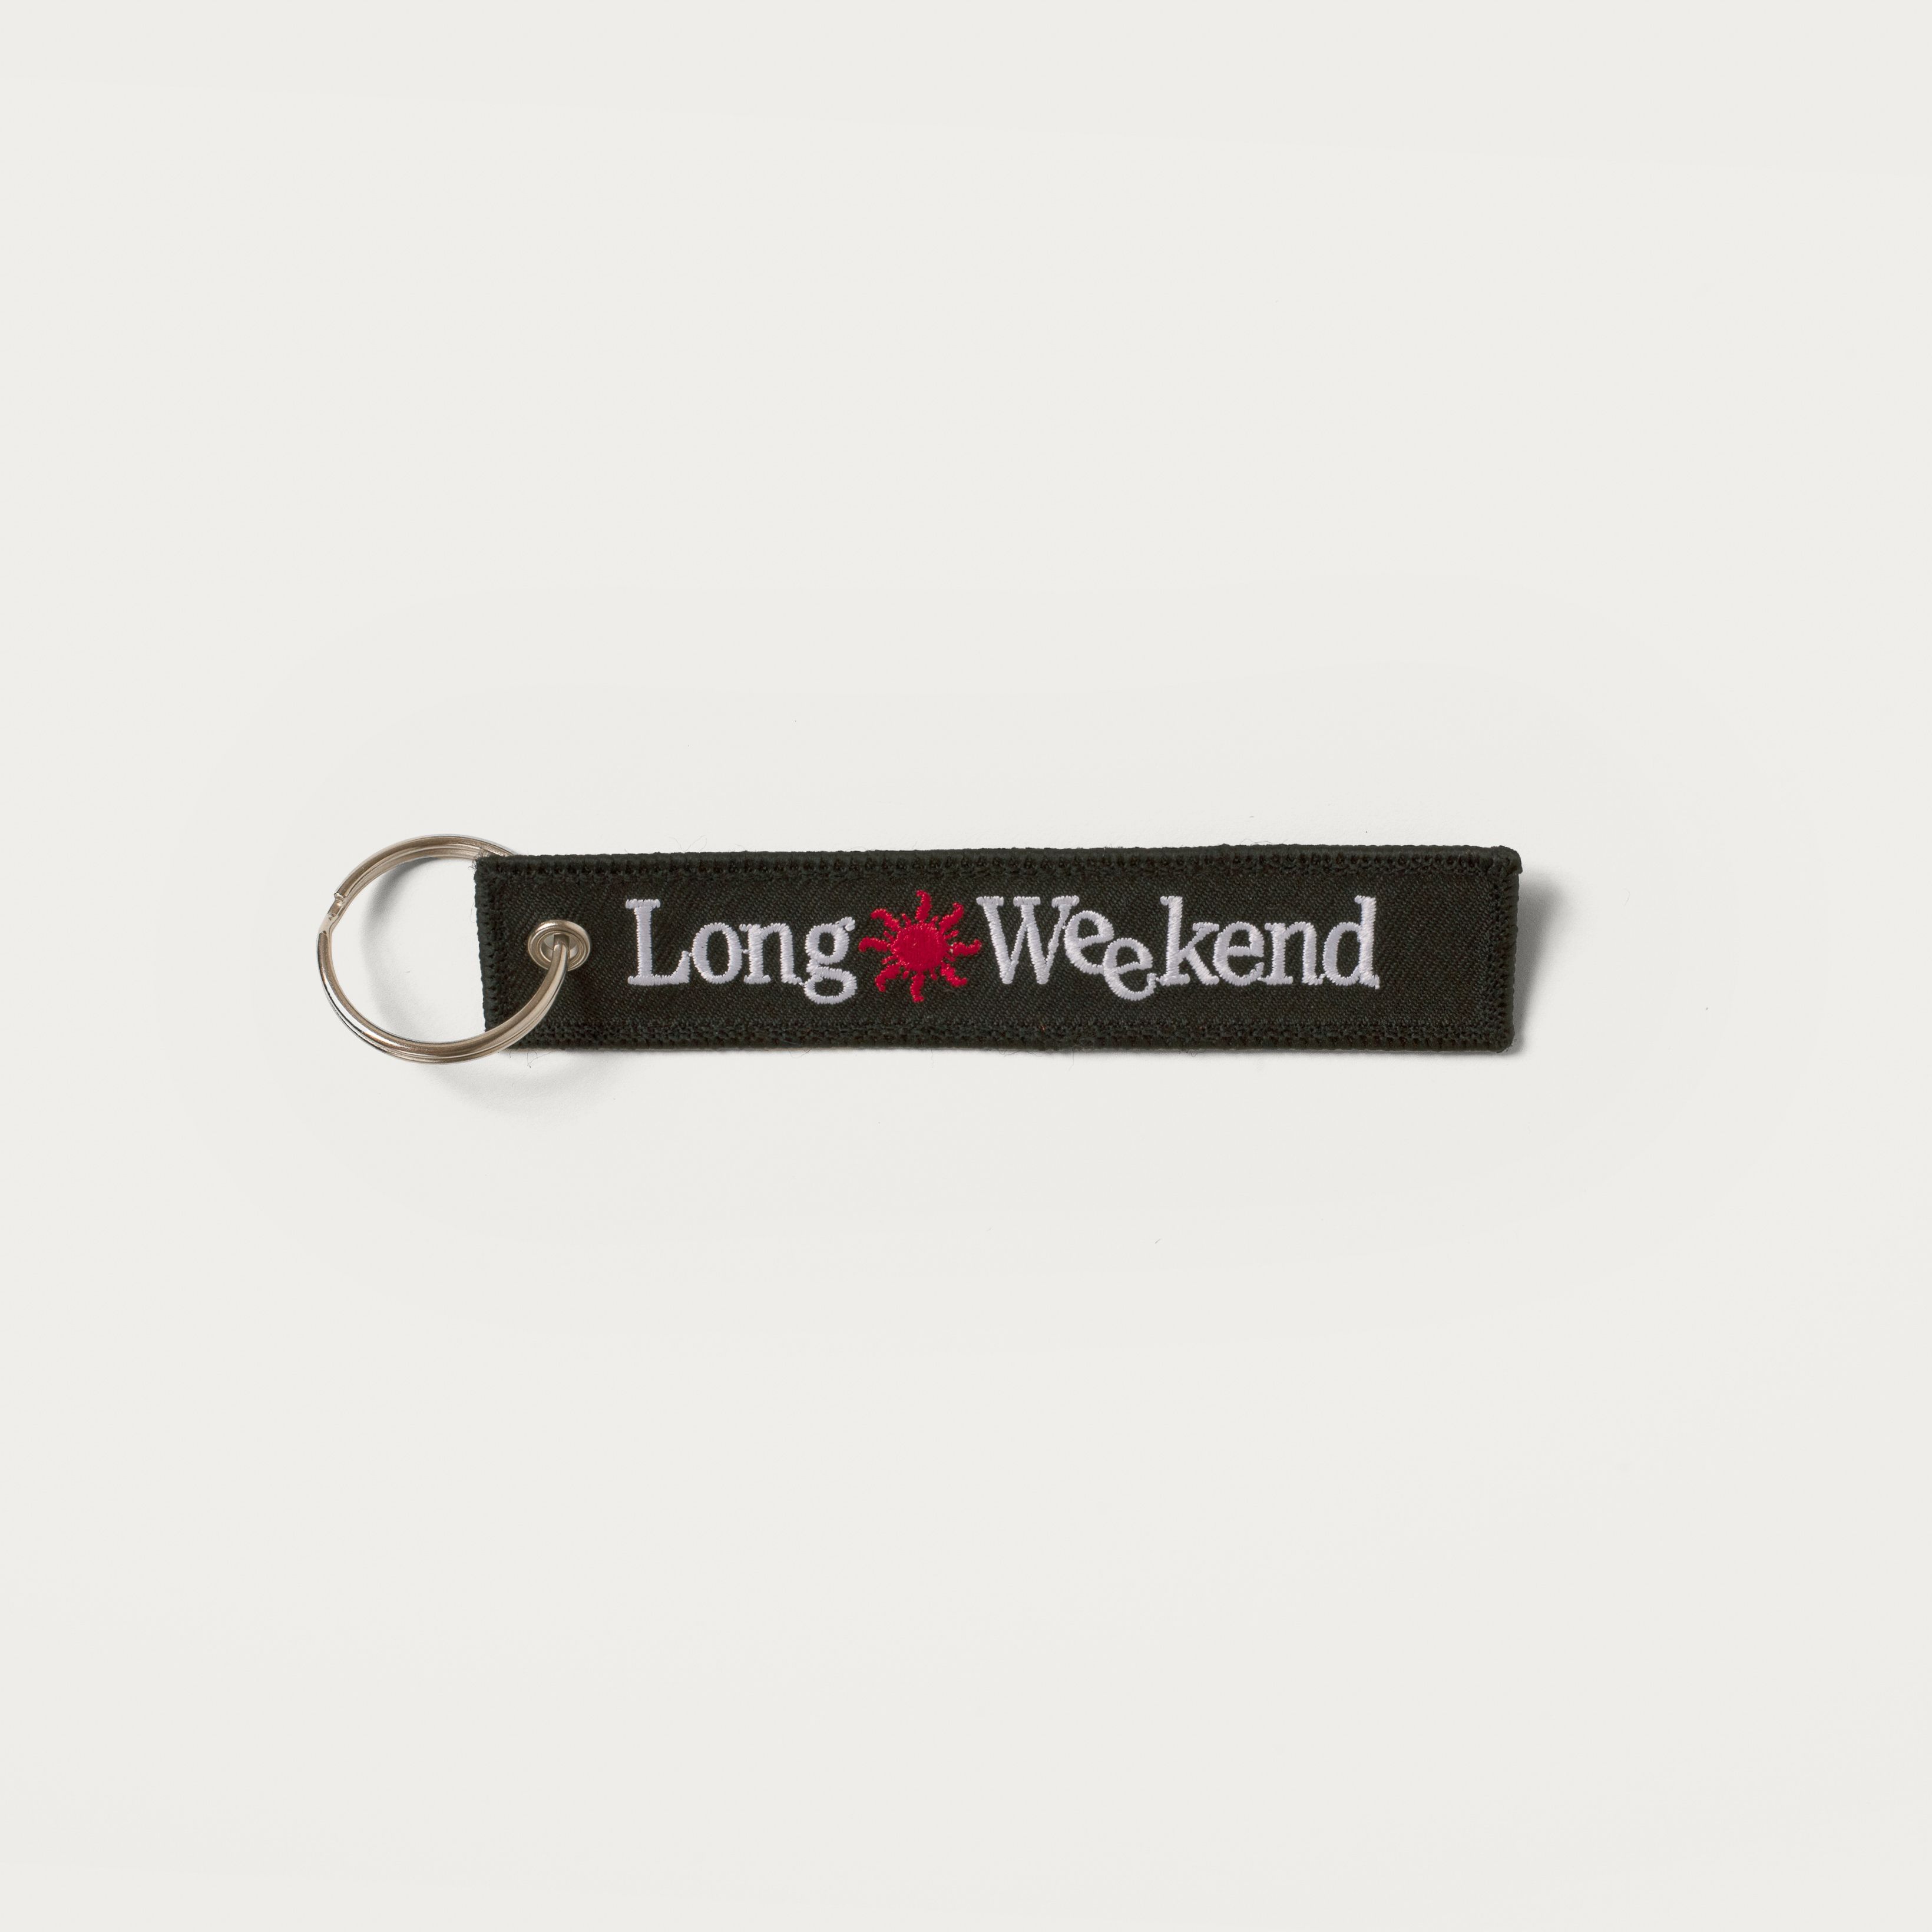 Long Weekend Jet Key Tag - Black